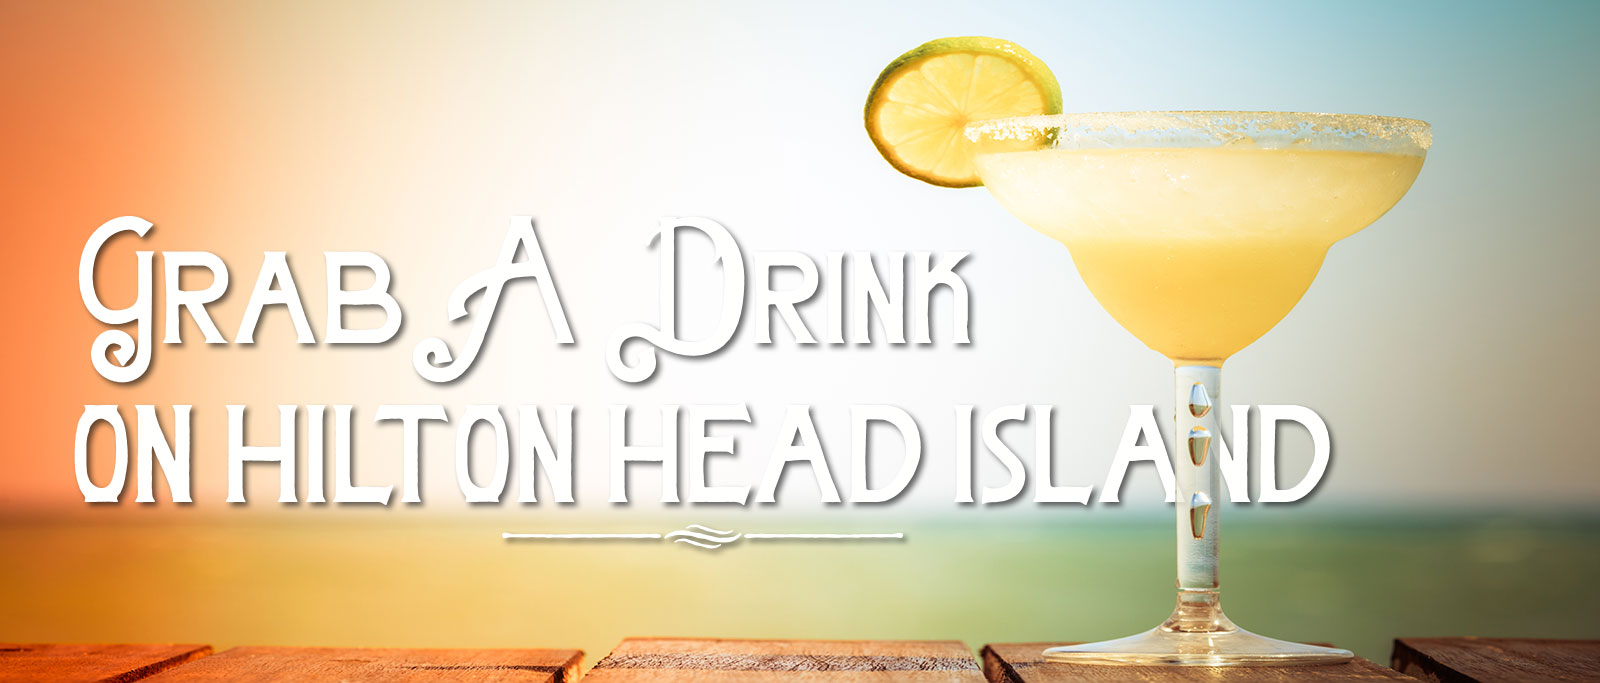 grab-a-drink-on-hilton-head-island